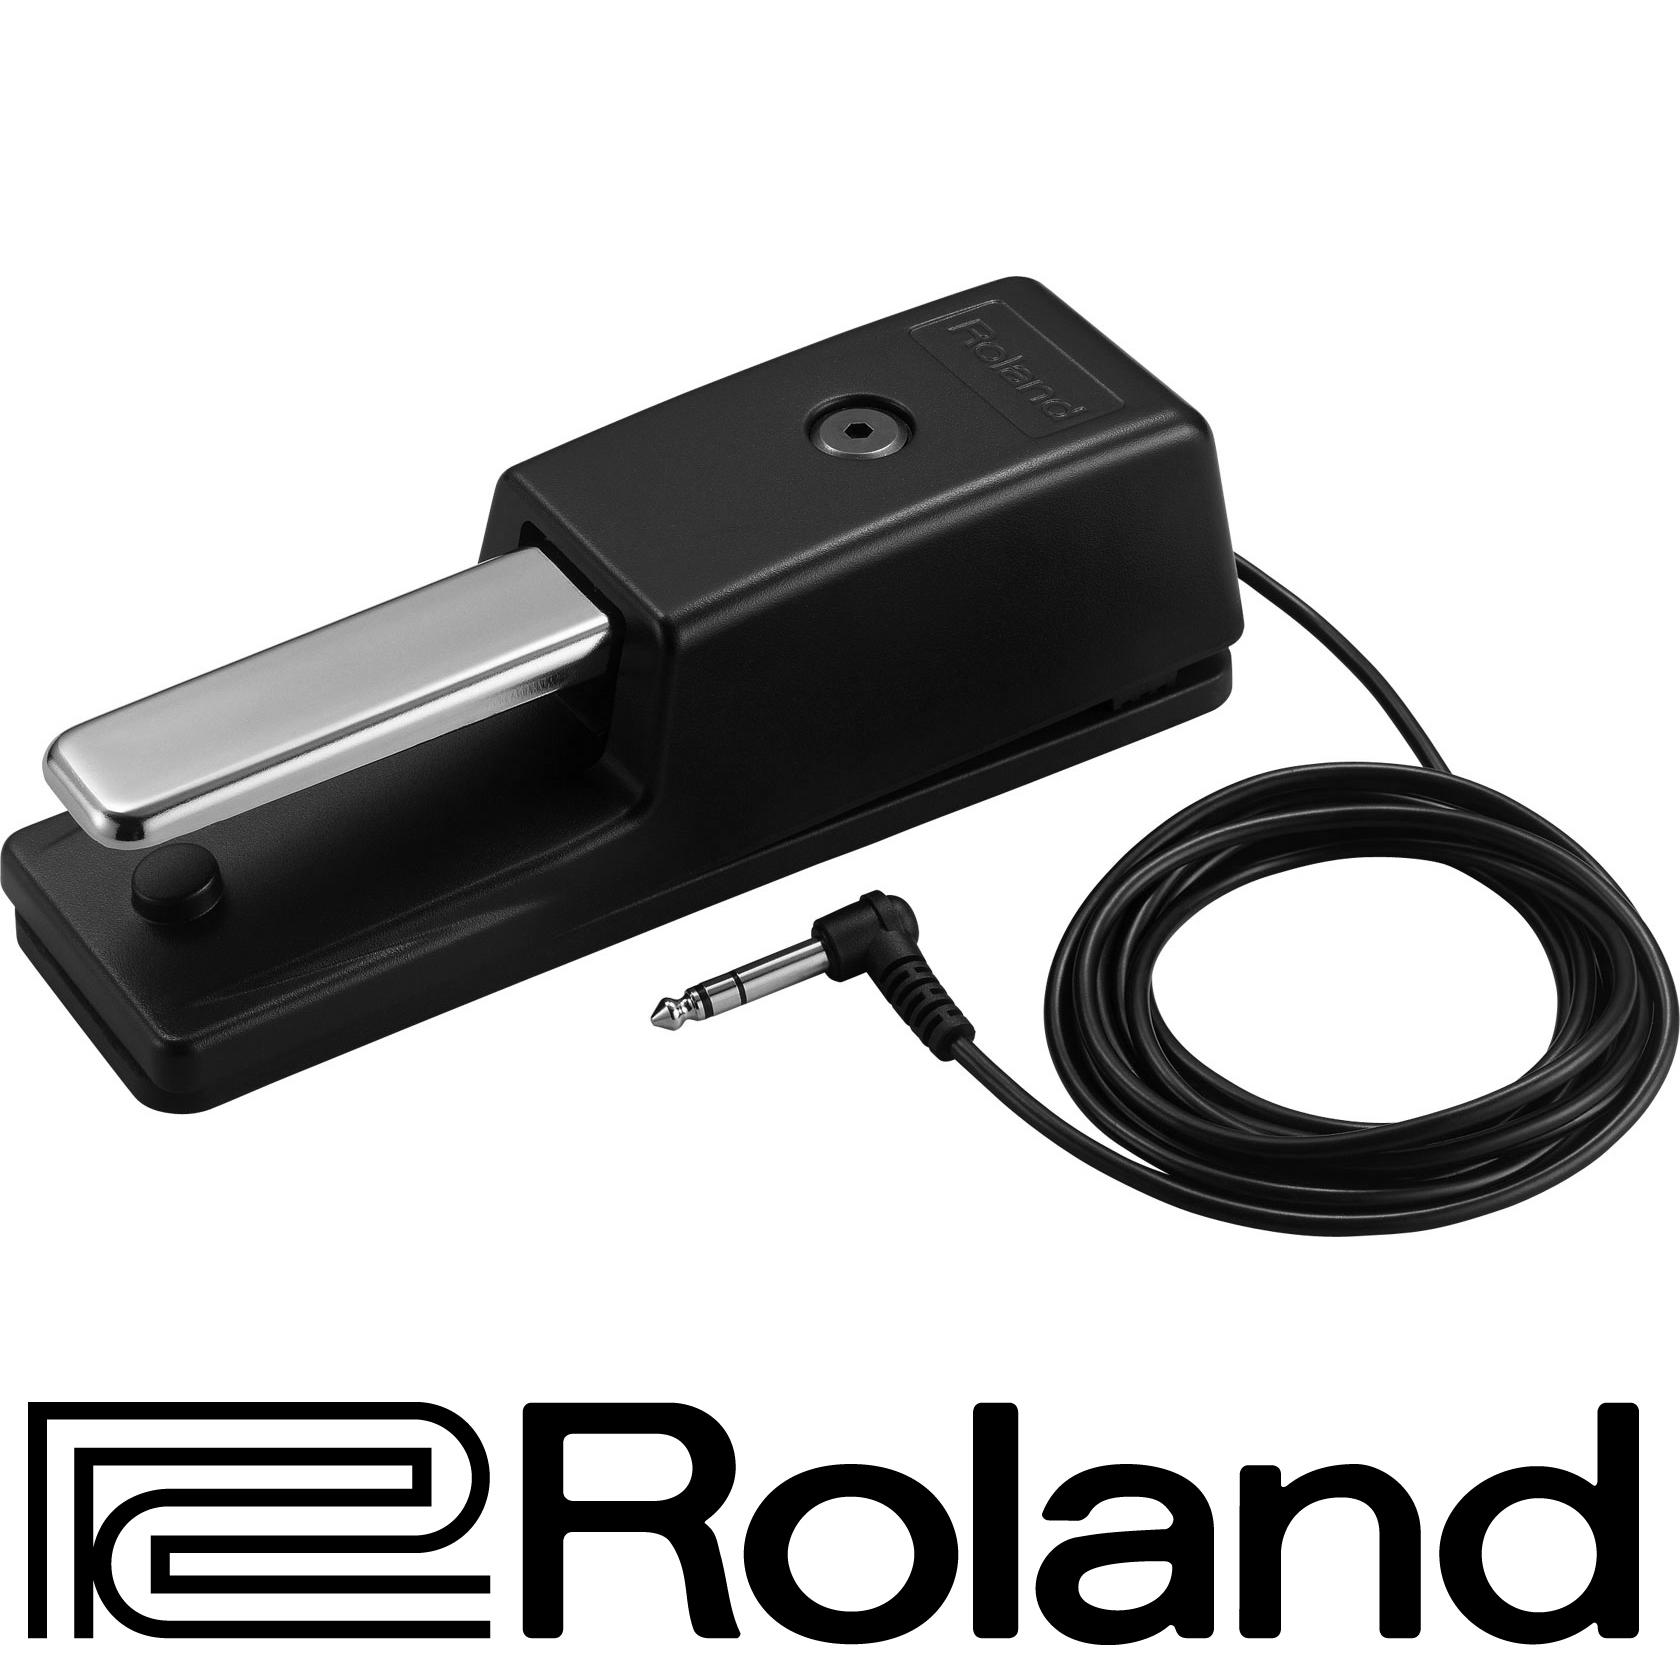 ROLAND® Footswitch รุ่น DP-10 (Sustain Pedal, ฟุตสวิทช์, ฟุตสวิตช์, สวิทช์เท้าเหยียบ, Damper Pedal)